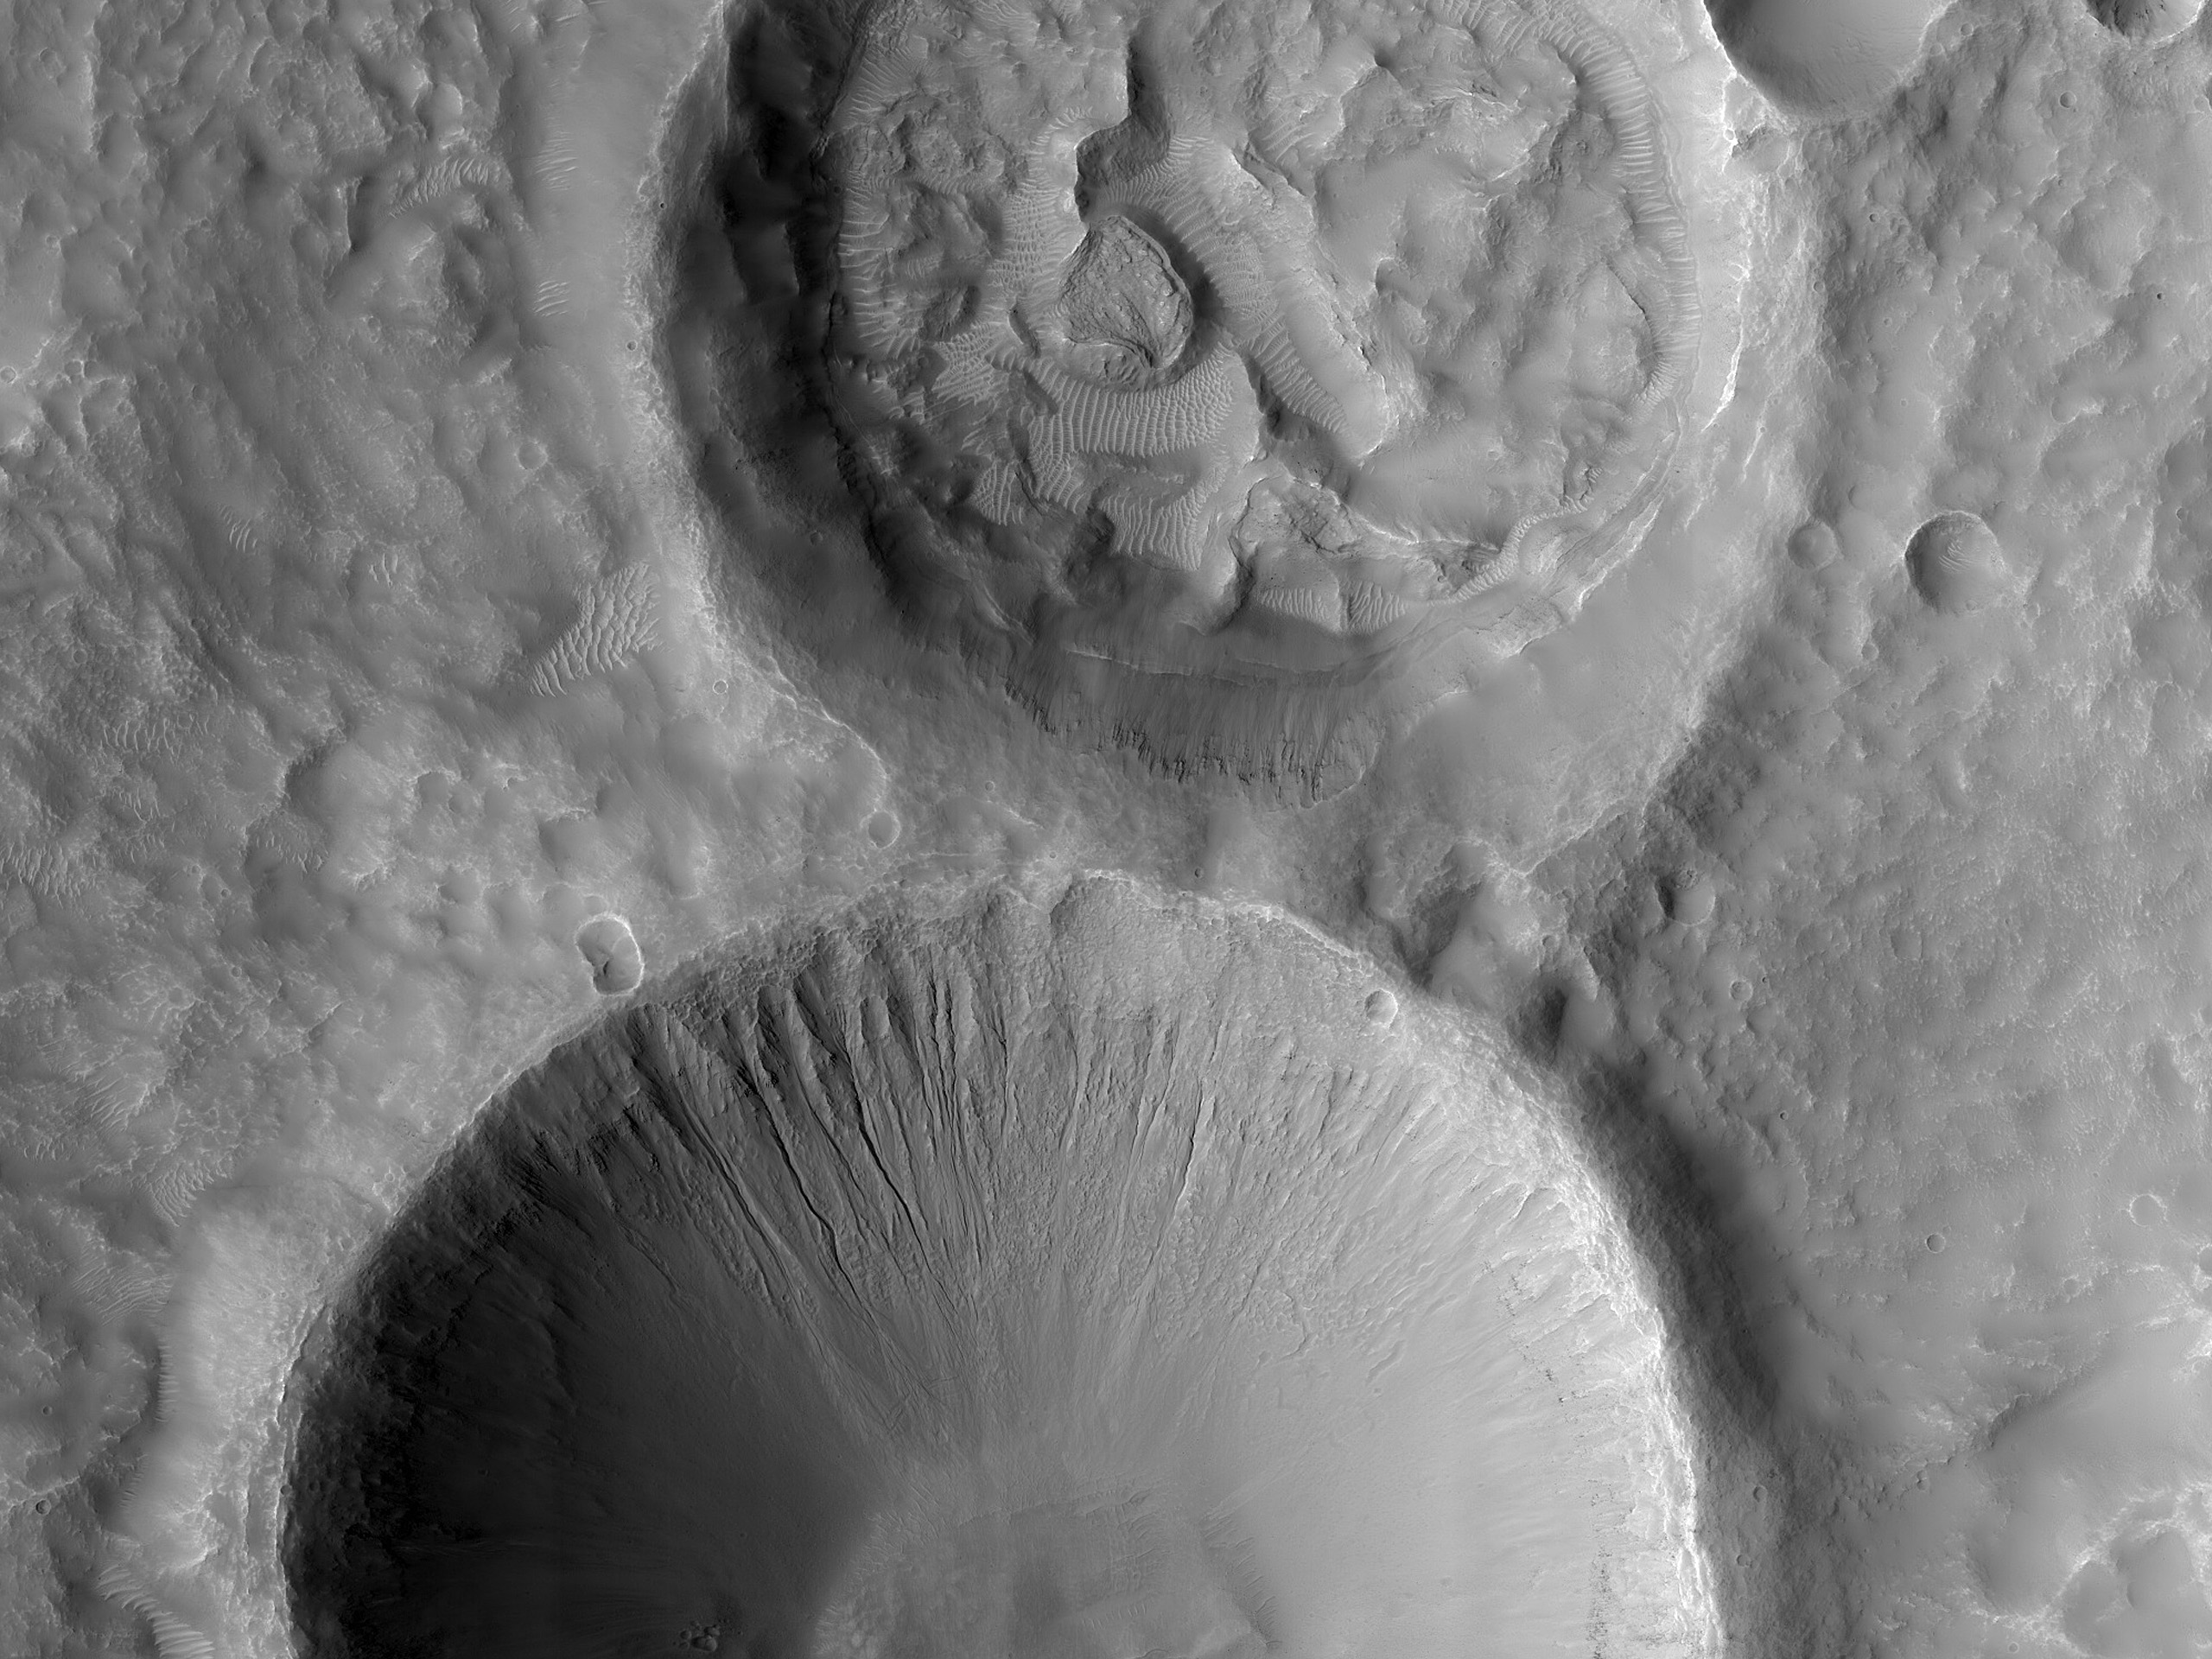 Deux cratères au sud de Sirenum Fossae